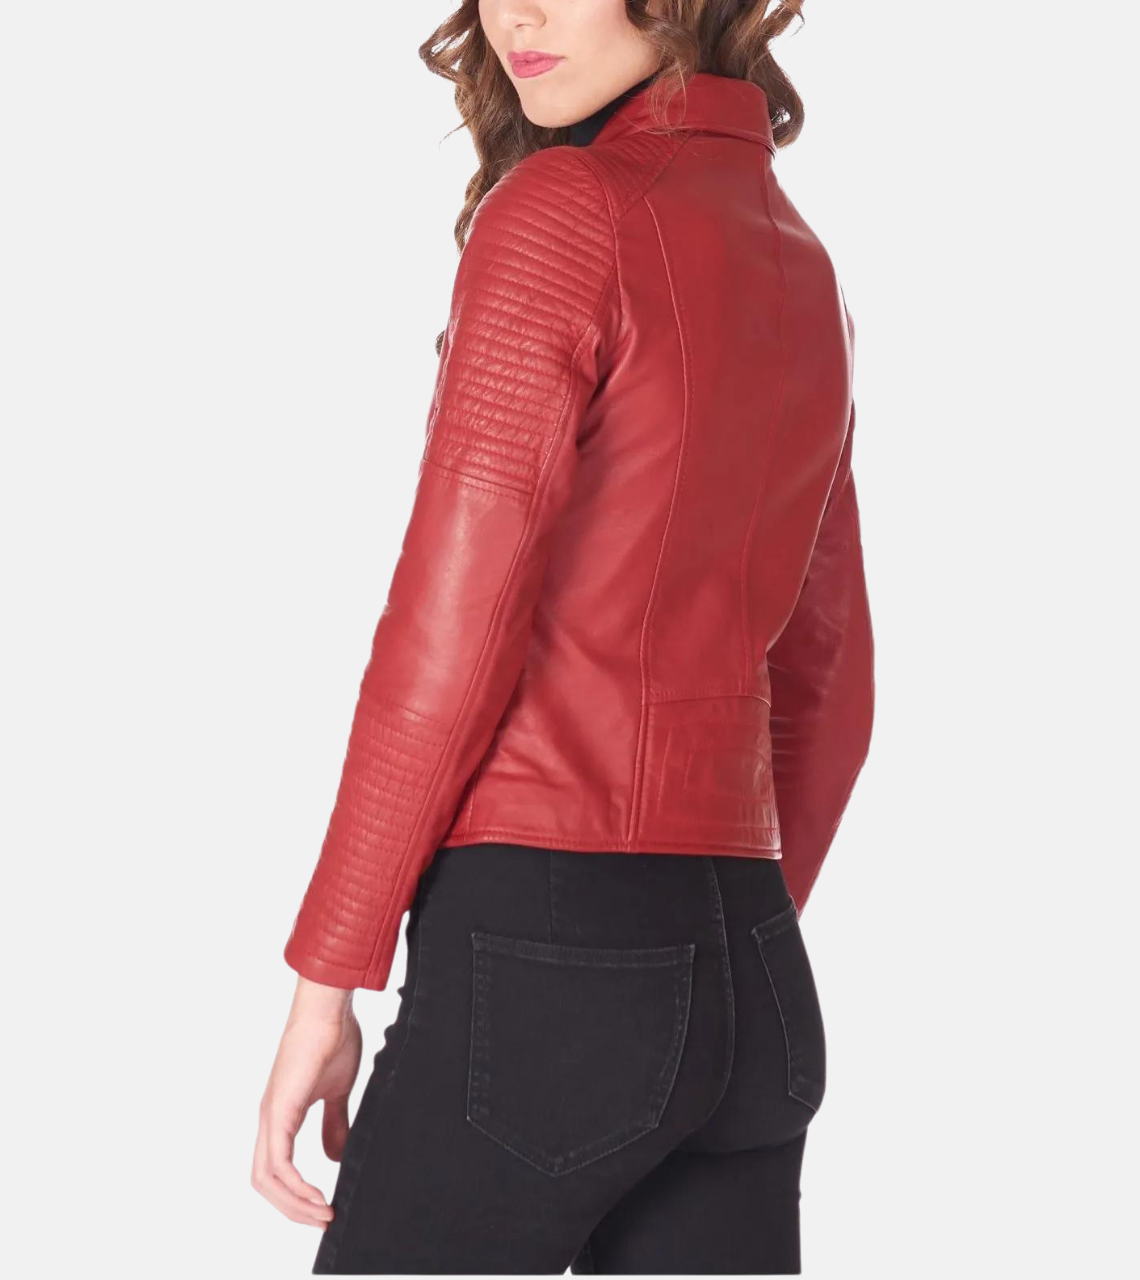 Red Sheepskin Women’s Biker Leather Jacket Back